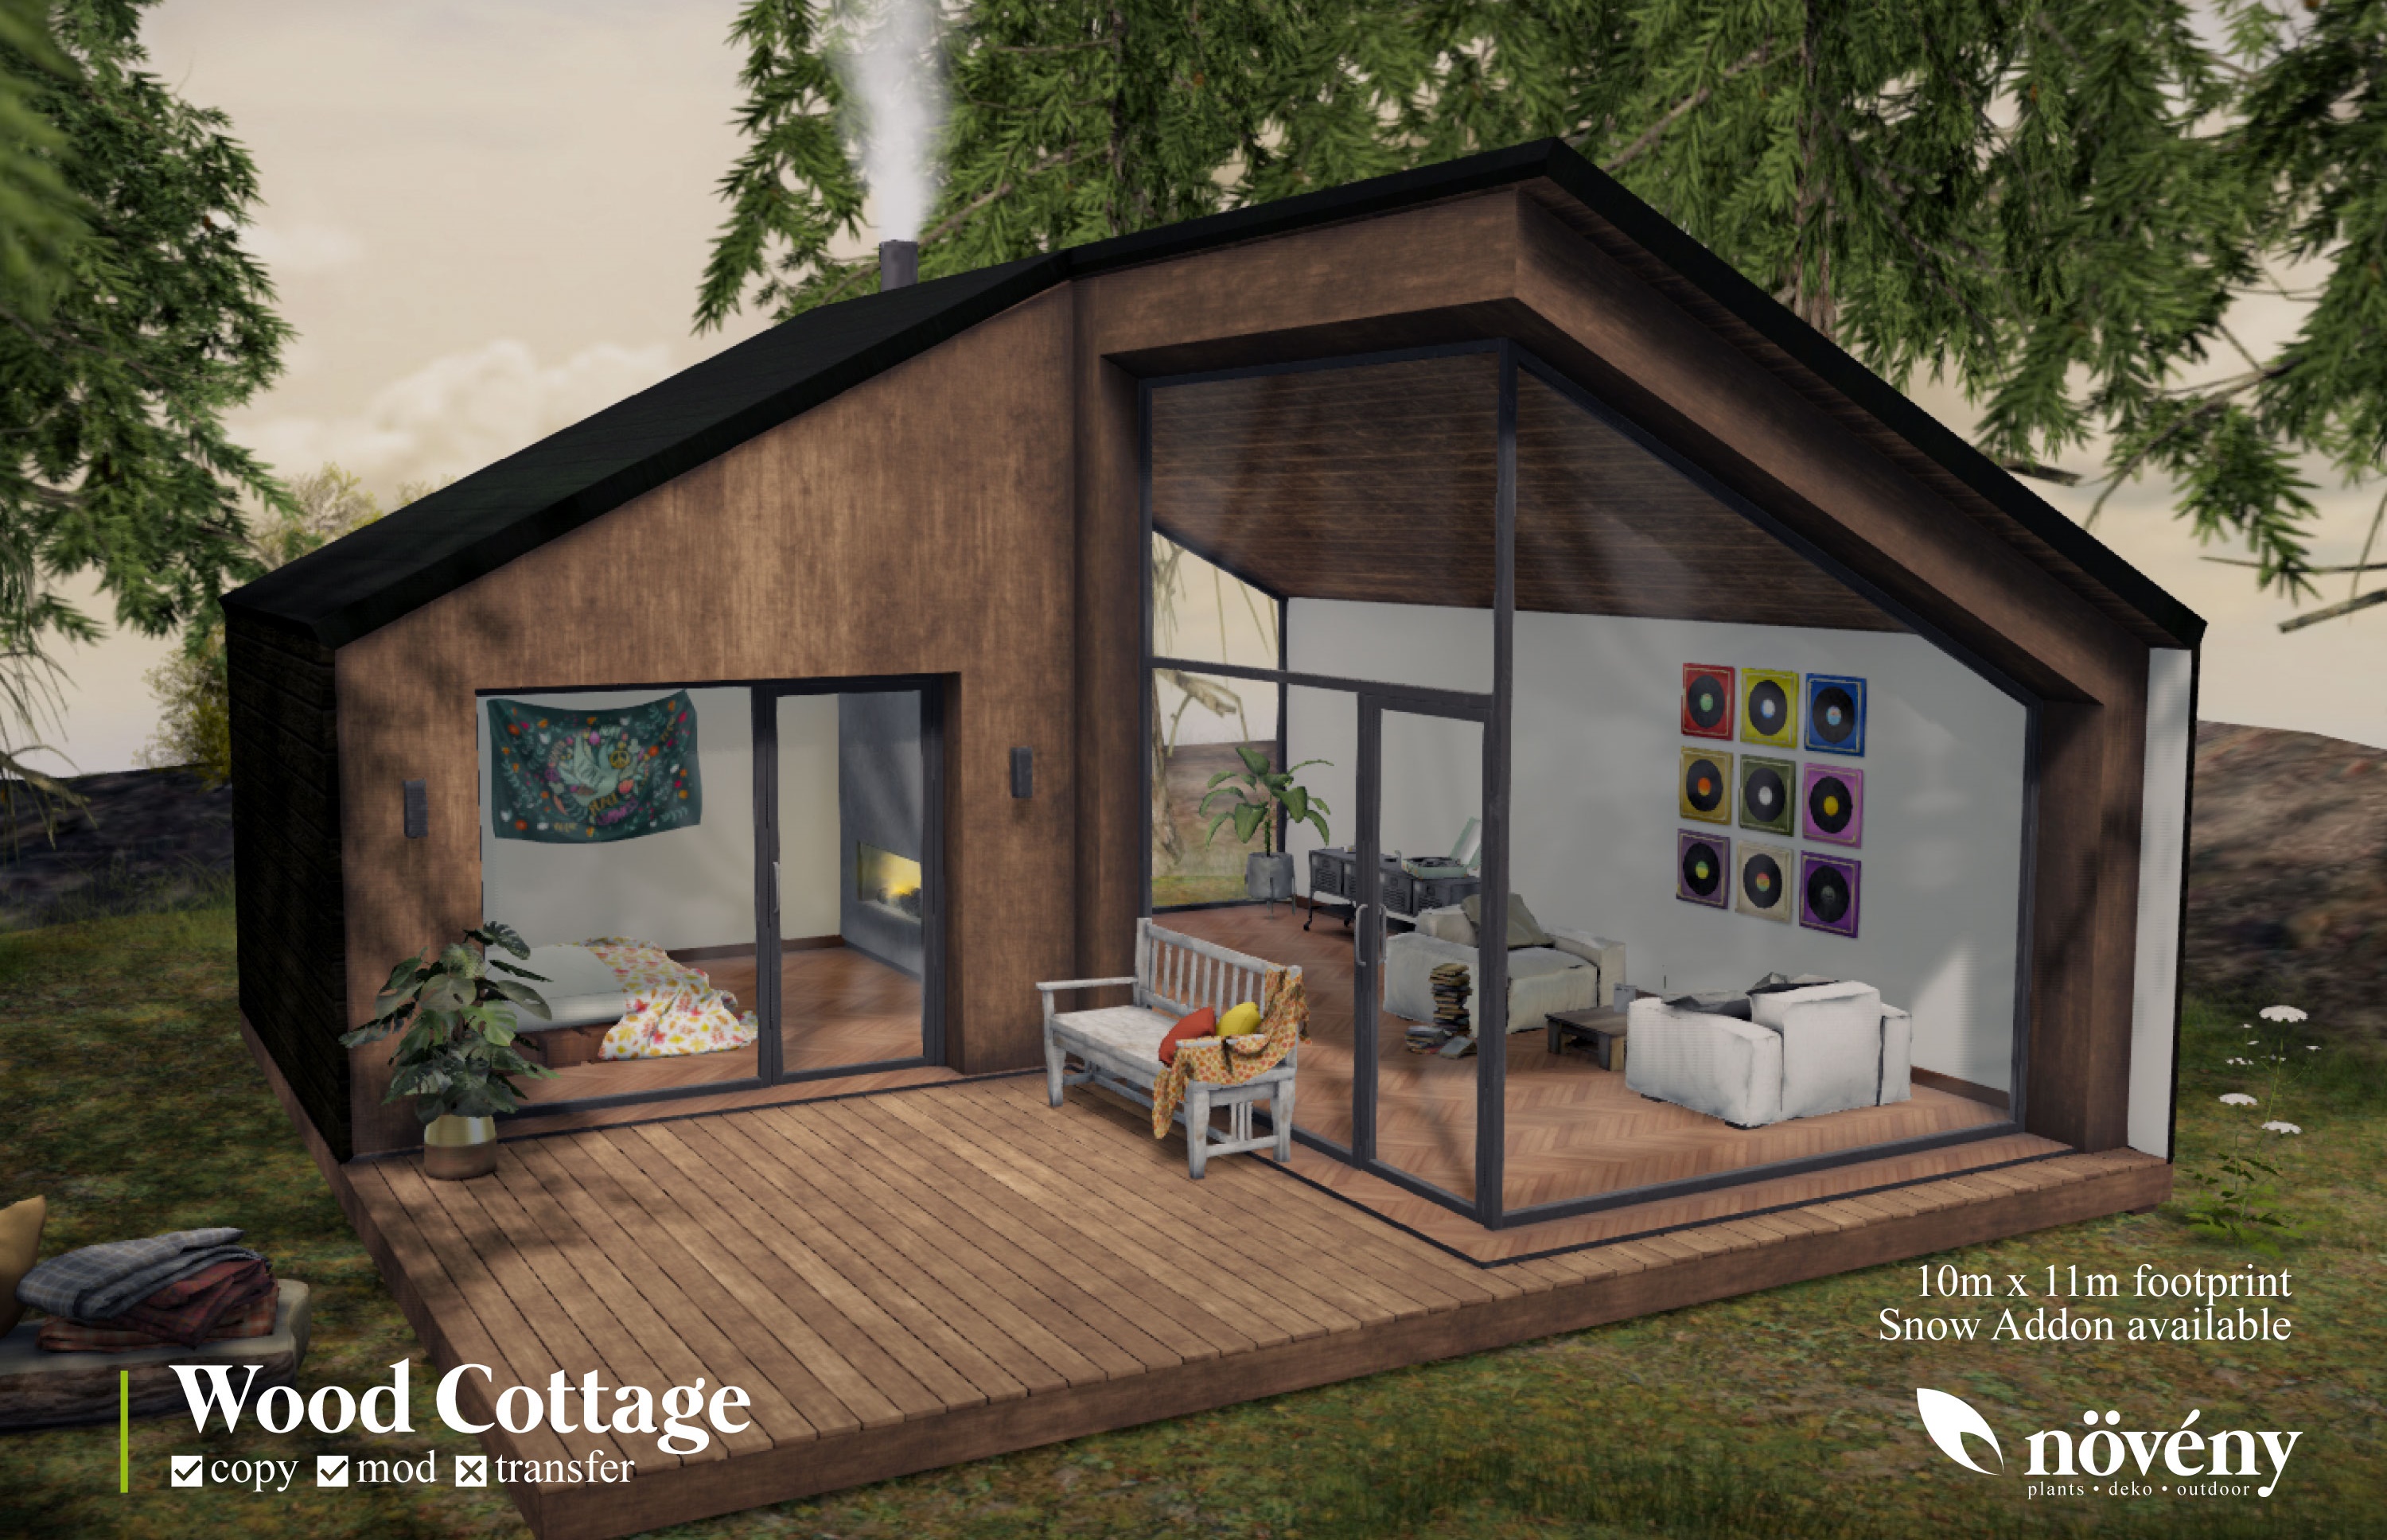 Noveny – Wood Cottage